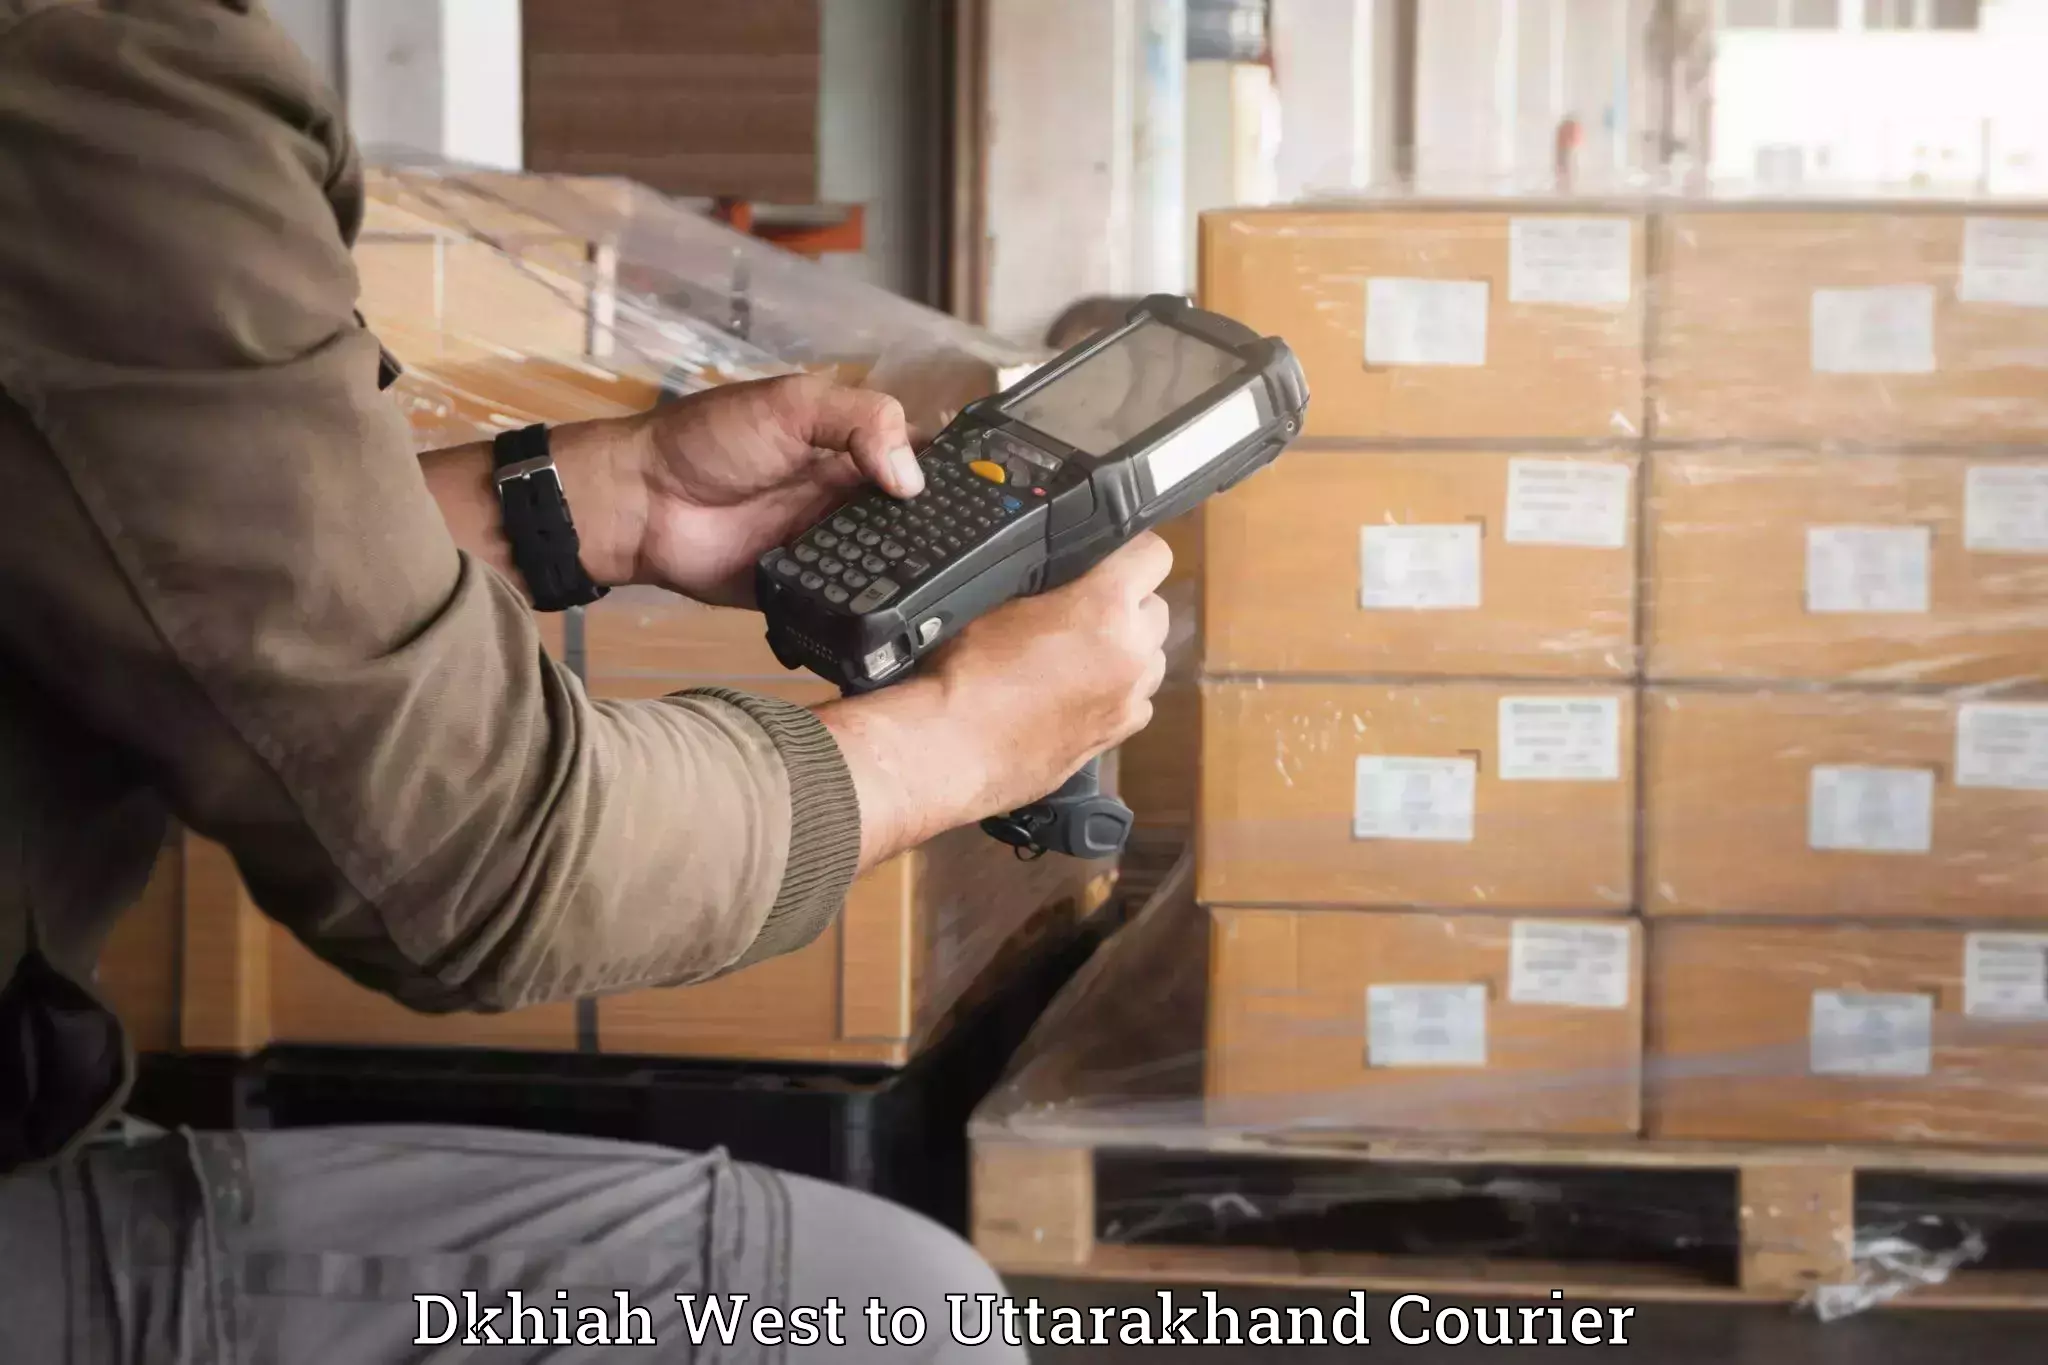 Luggage forwarding service Dkhiah West to Uttarakhand